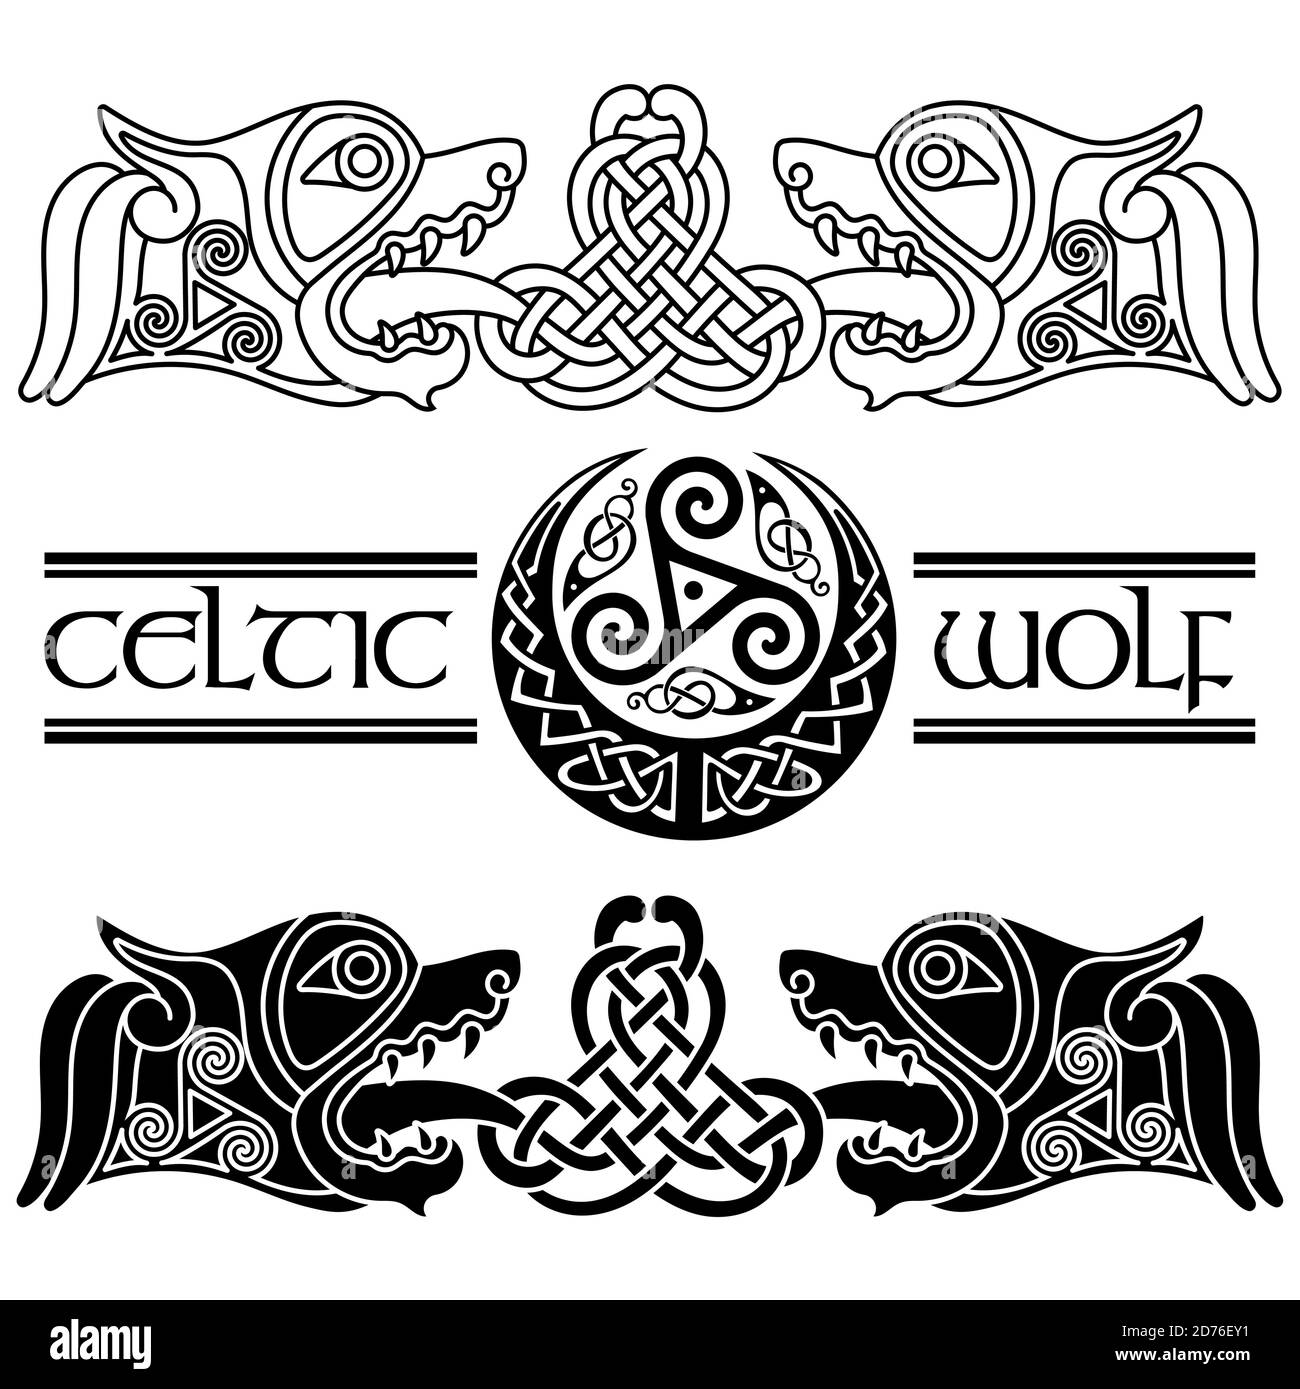 Wölfe im keltischen Stil, keltisches Muster und keltischer Mond Stock Vektor